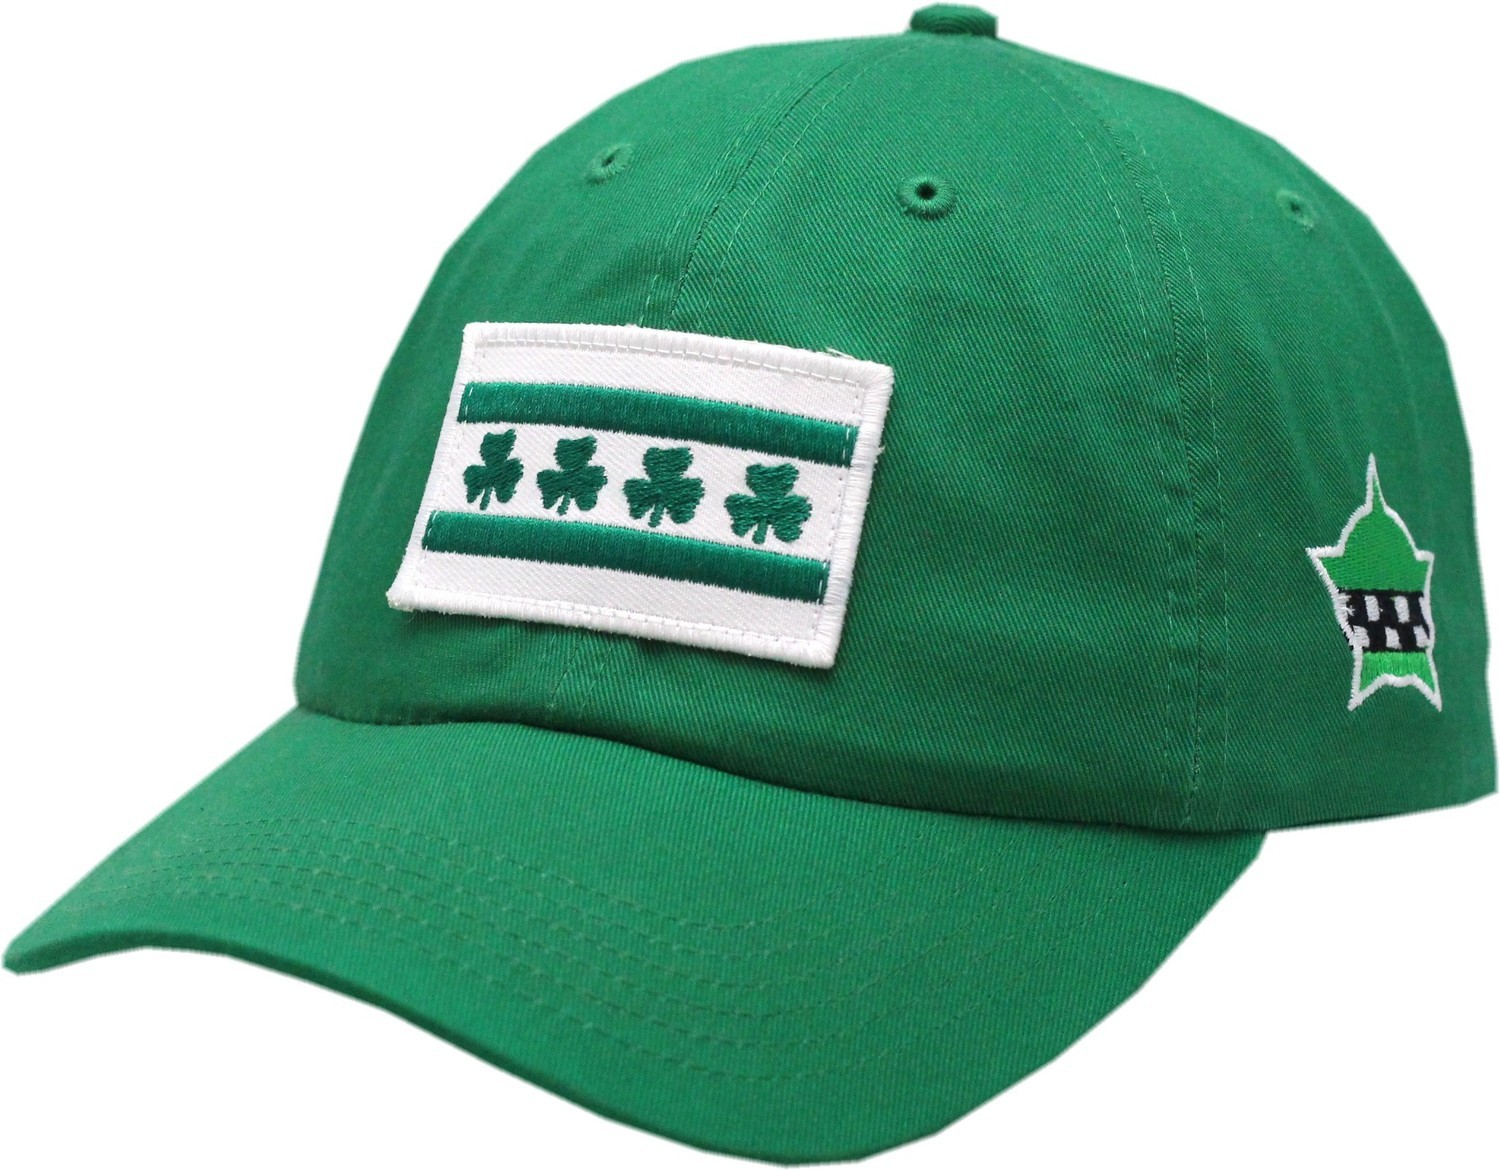 Chicago Flag Shamrock Hat Buckle Back Green